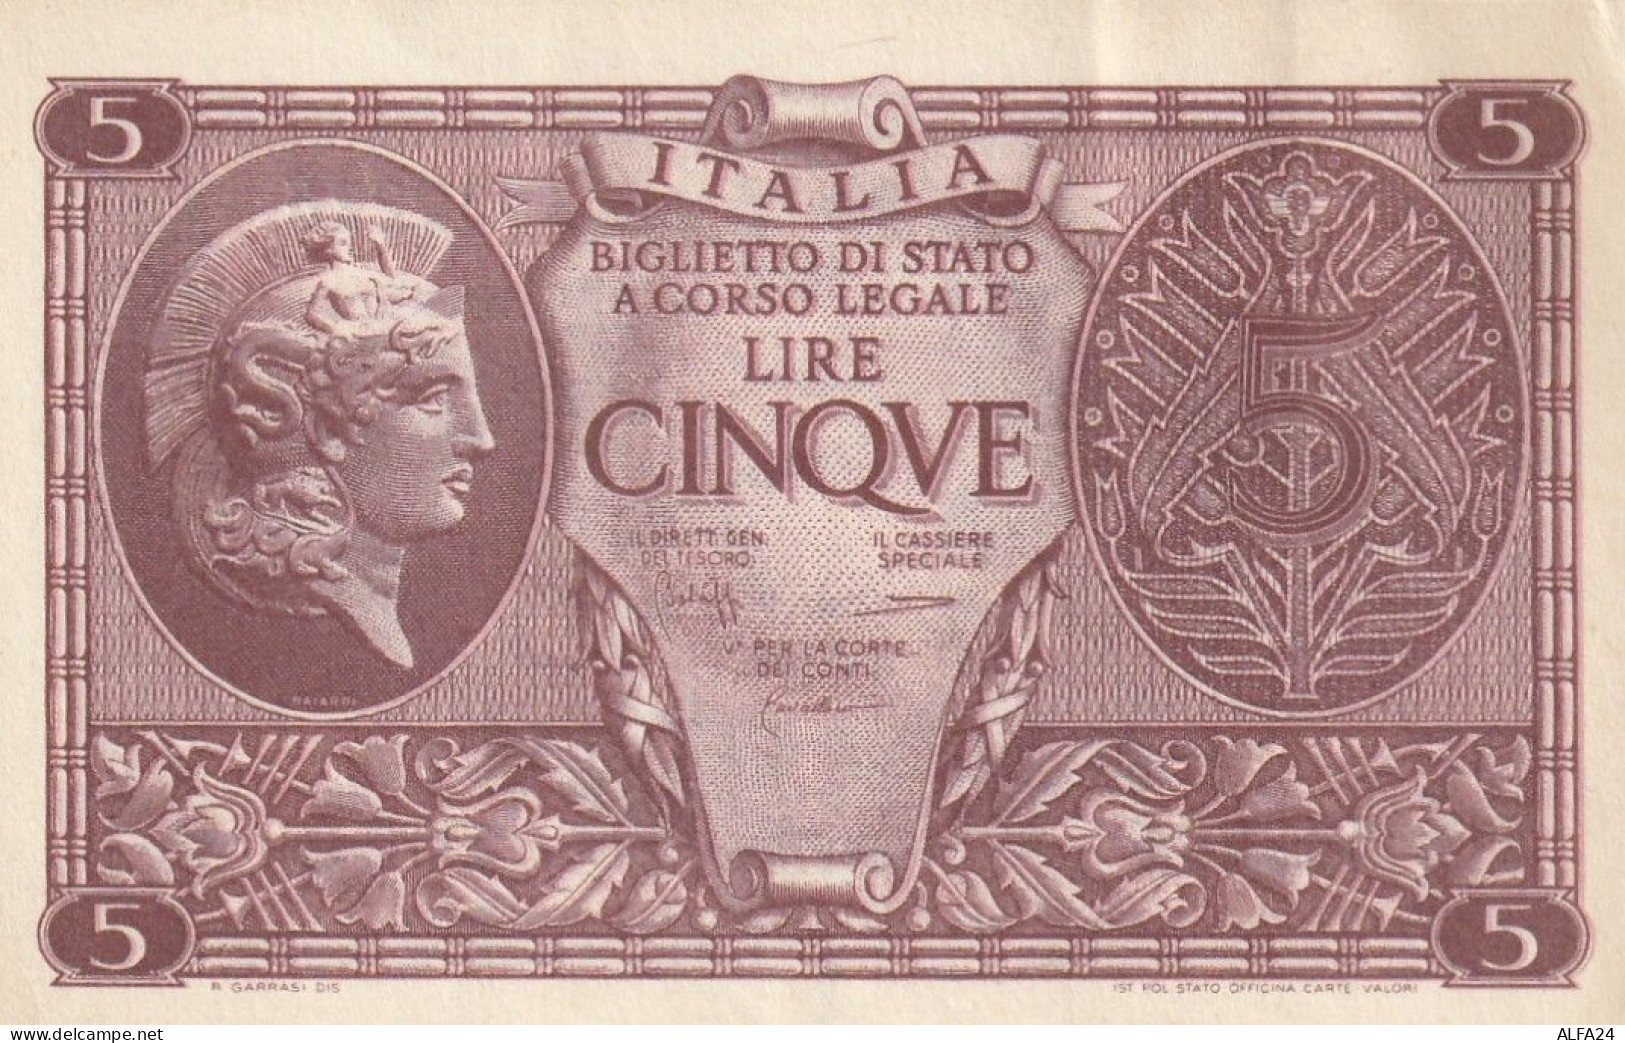 BANCONOTA ITALIA BIGLIETTO STATO 5 AUNC  (B_229 - Italië– 5 Lire